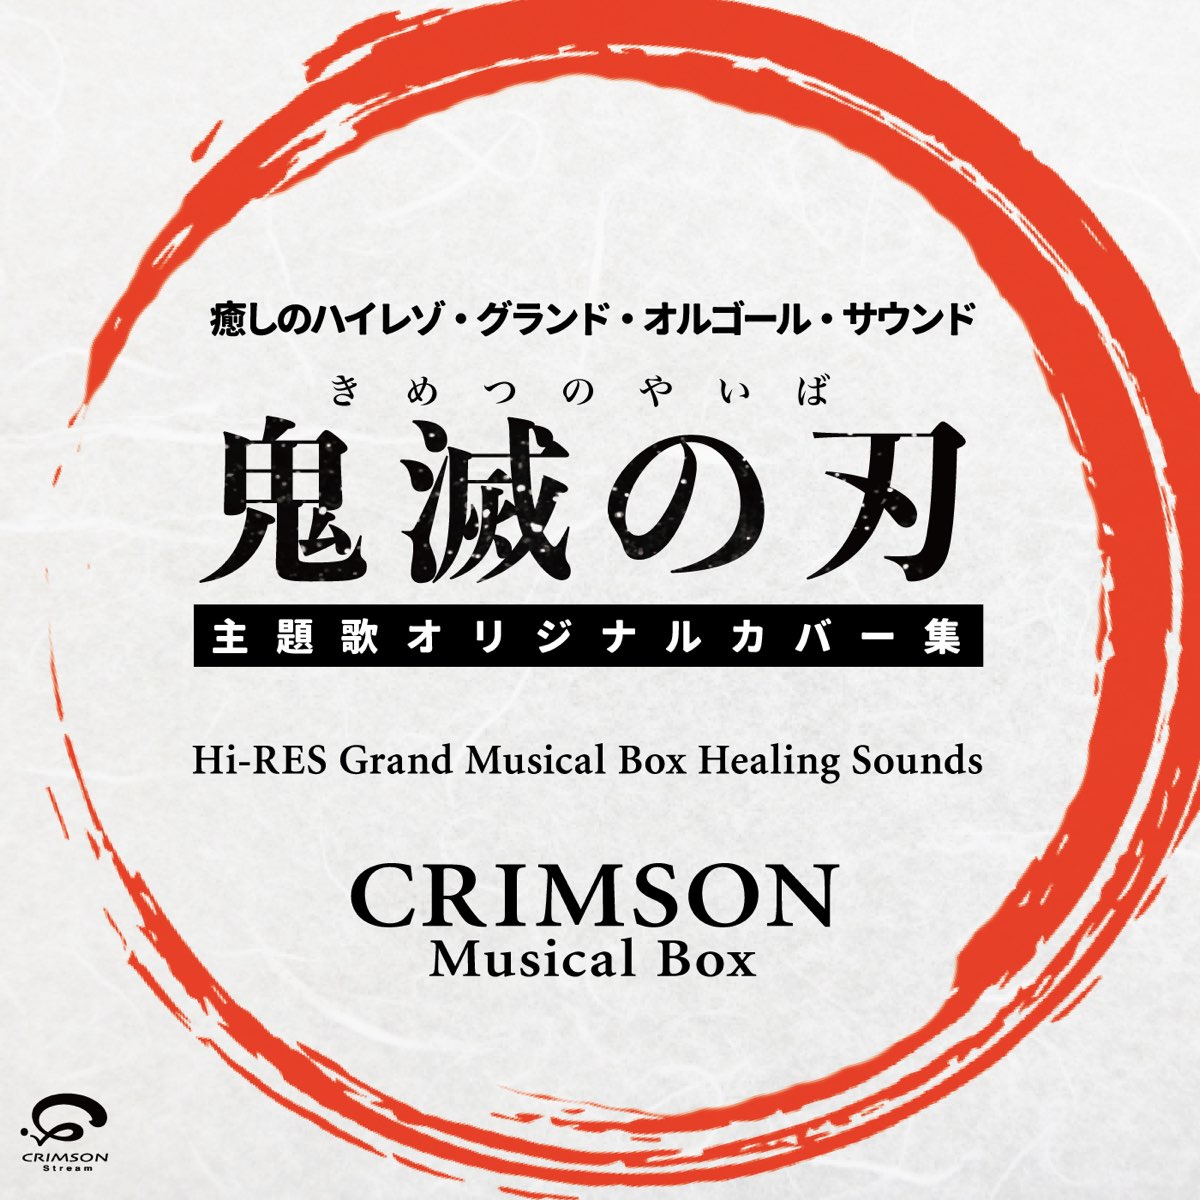 Crimson Musical Boxの 鬼滅の刃 主題歌オリジナルカバー集 癒しのハイレゾ グランドオルゴール サウンド Single をapple Musicで